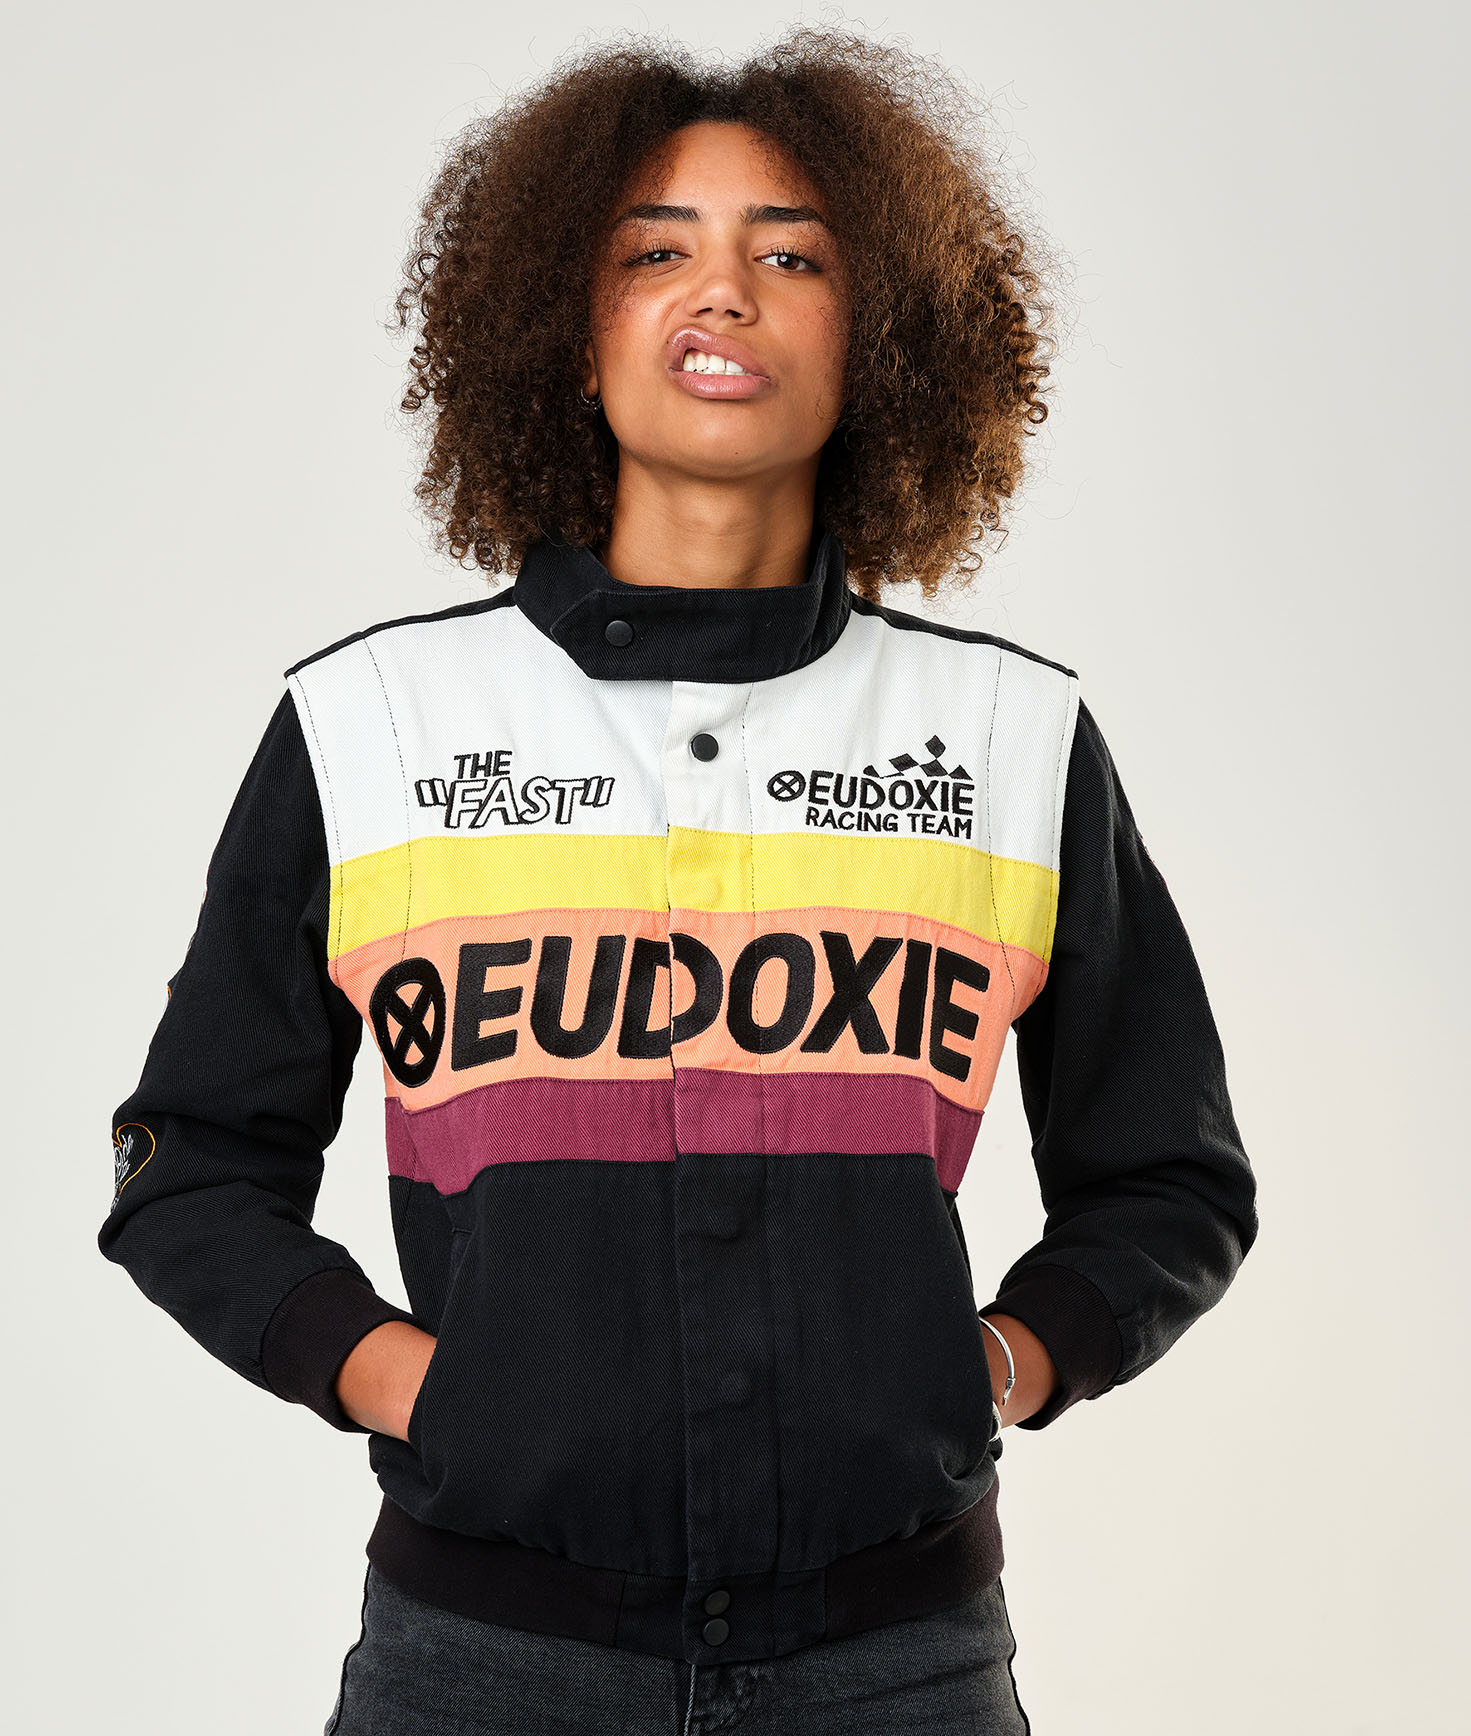 eudoxie-jacket-nascar-racing-femme-veste-multicolore-course-vintage-moto-1.jpg